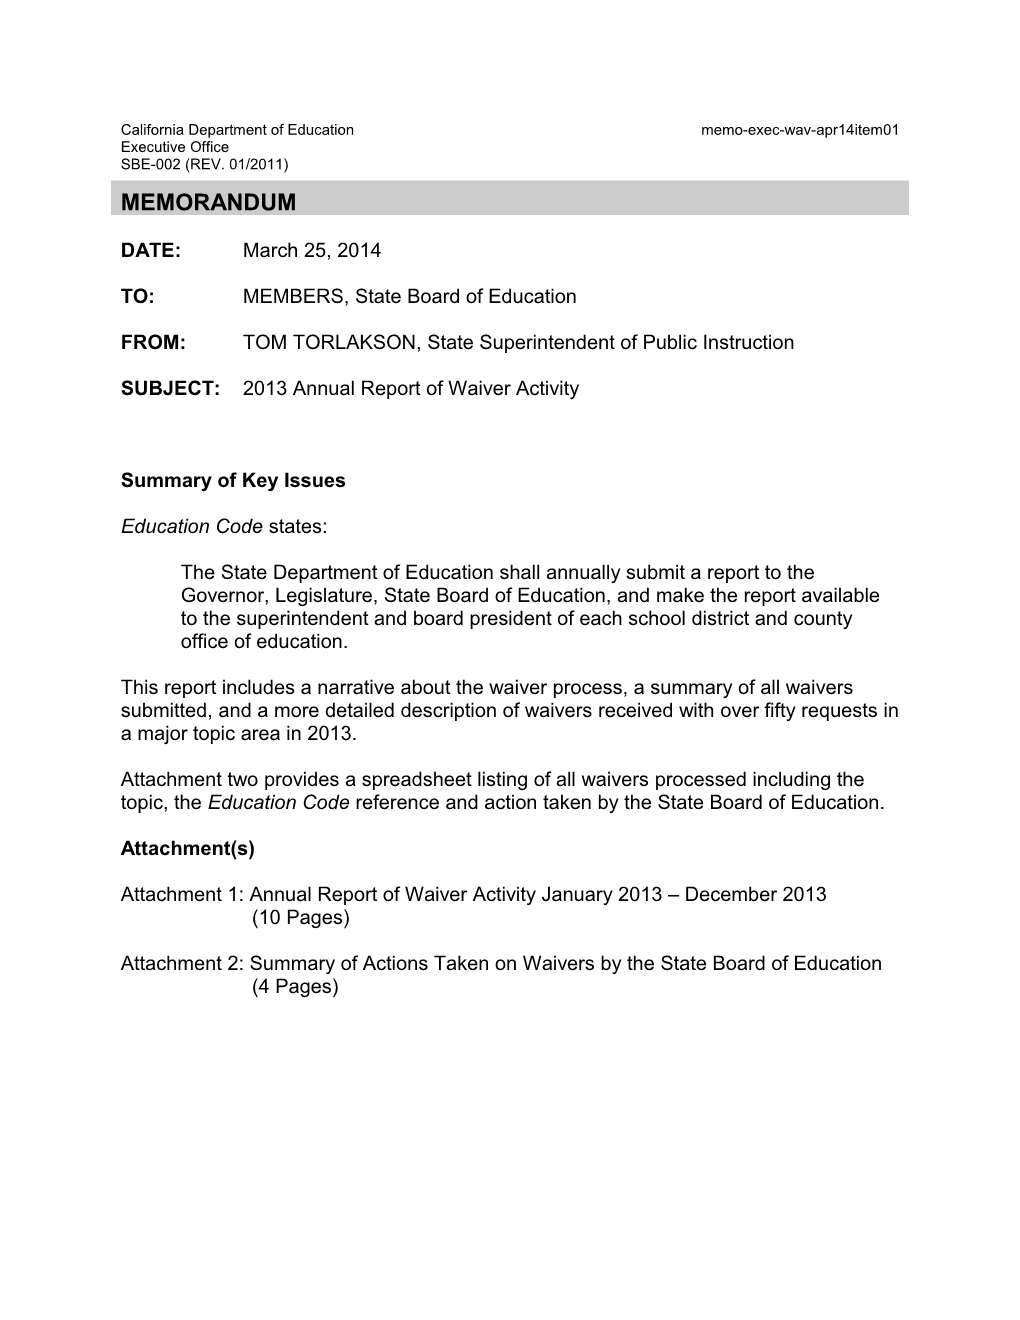 April 2014 Memorandum WAV Item 01 - Information Memorandum (CA State Board of Education)